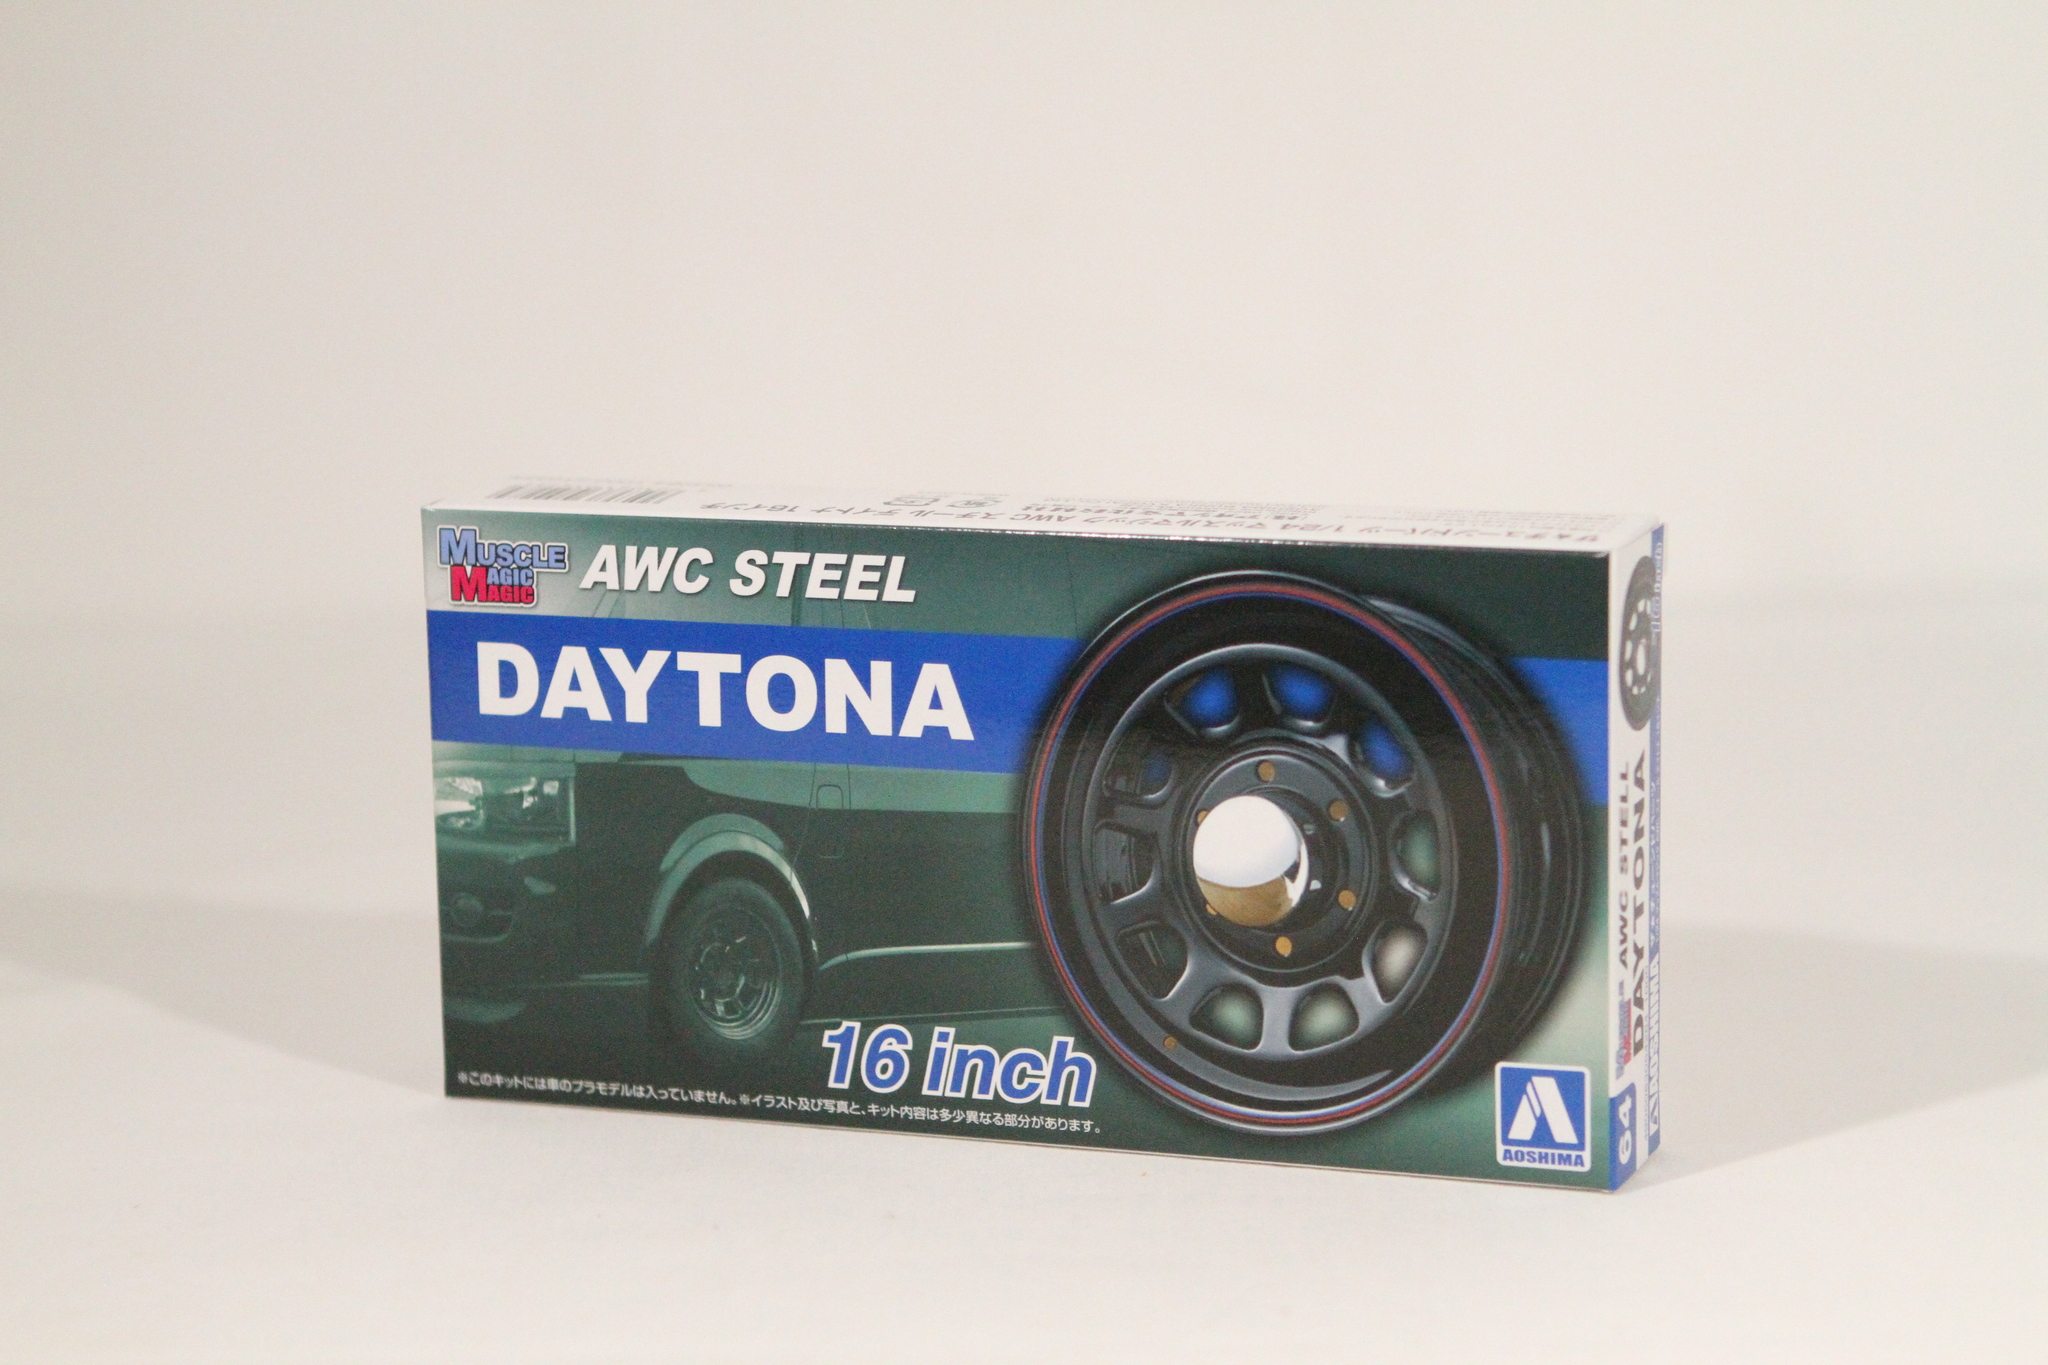 Muscale MAGIC ATC Steel Daytona 16inch 1/24